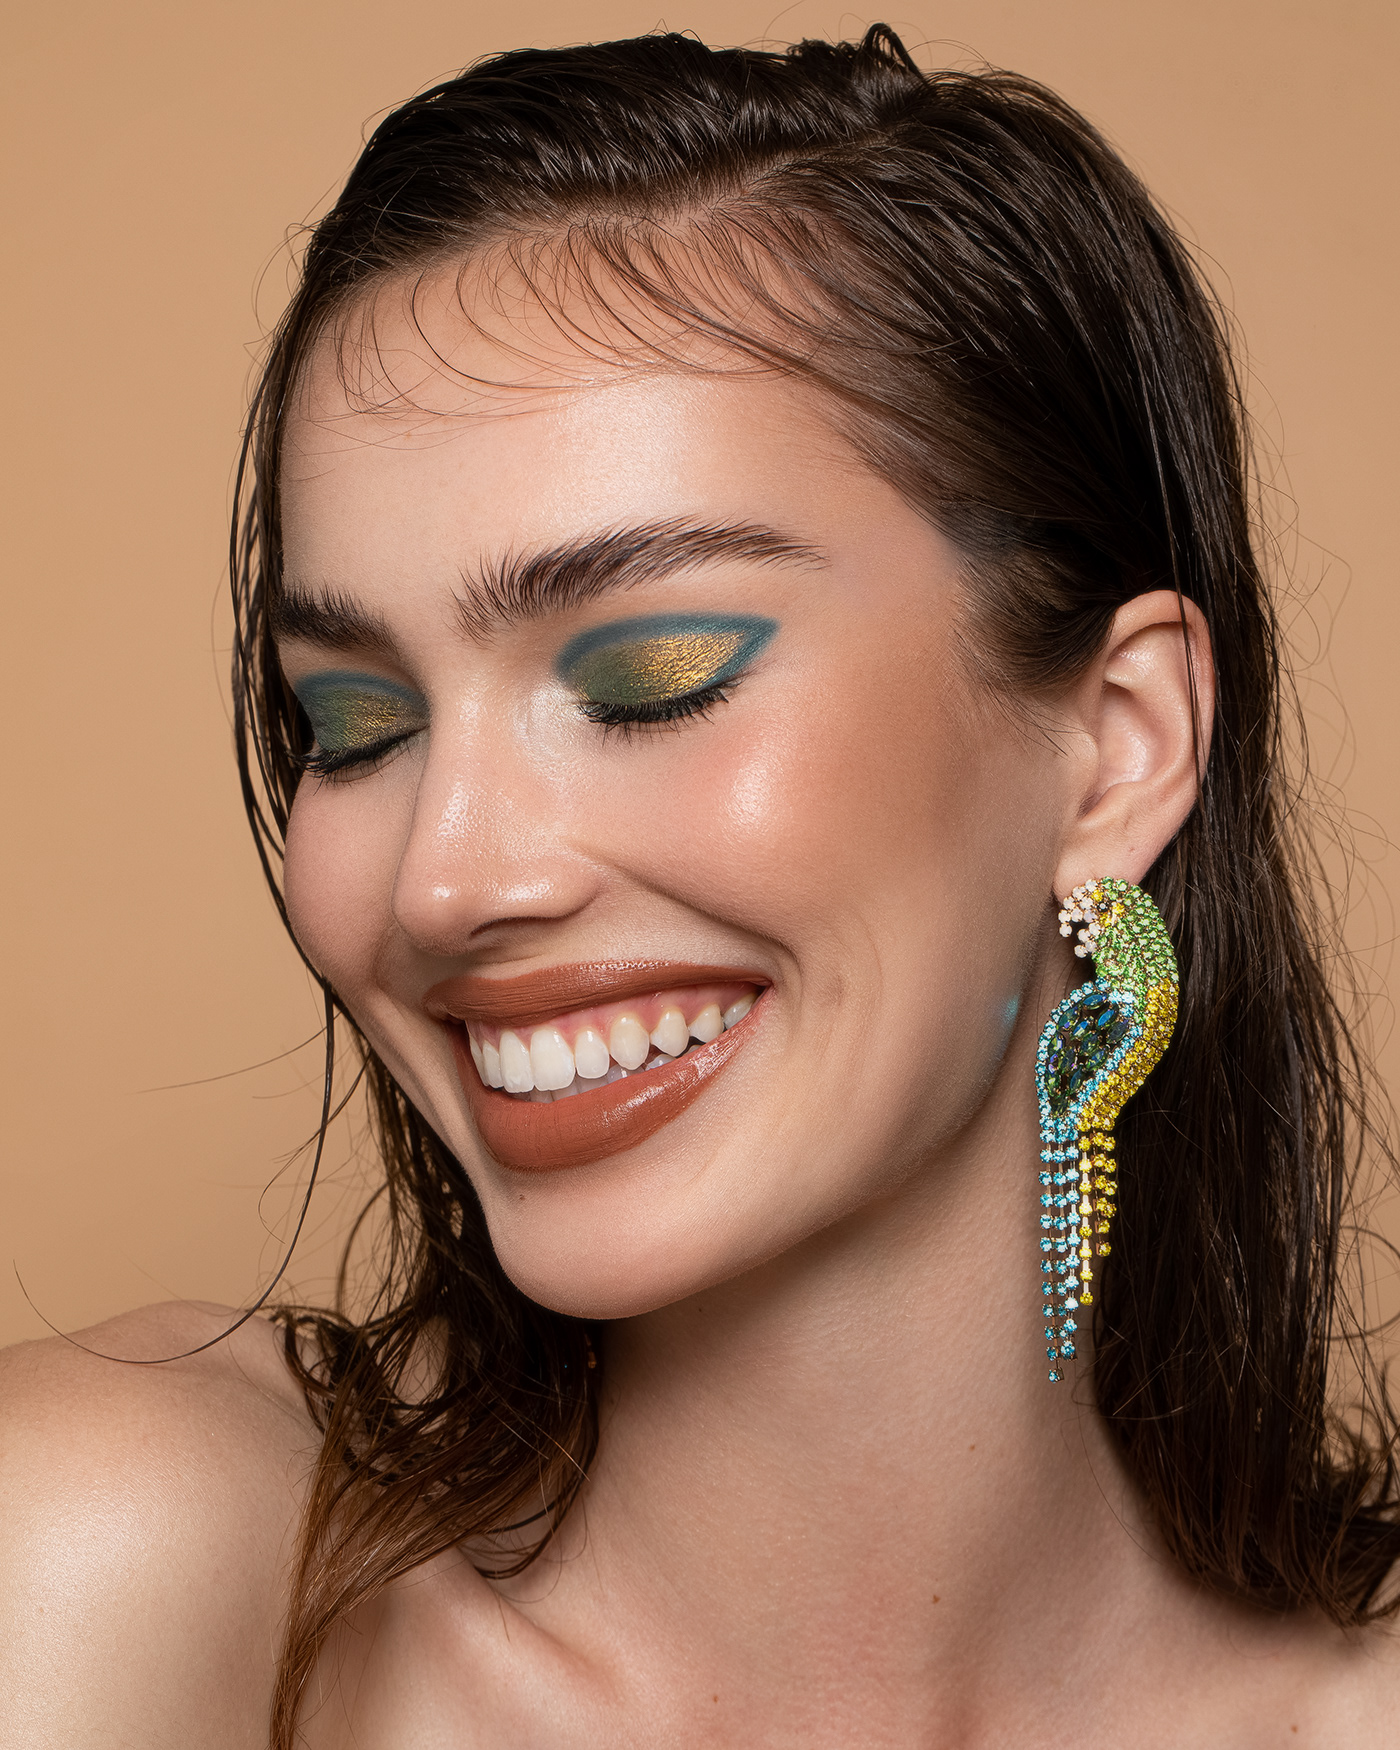 beauty makeup model MUA photographer photoshoot portrait retouch retoucher woman